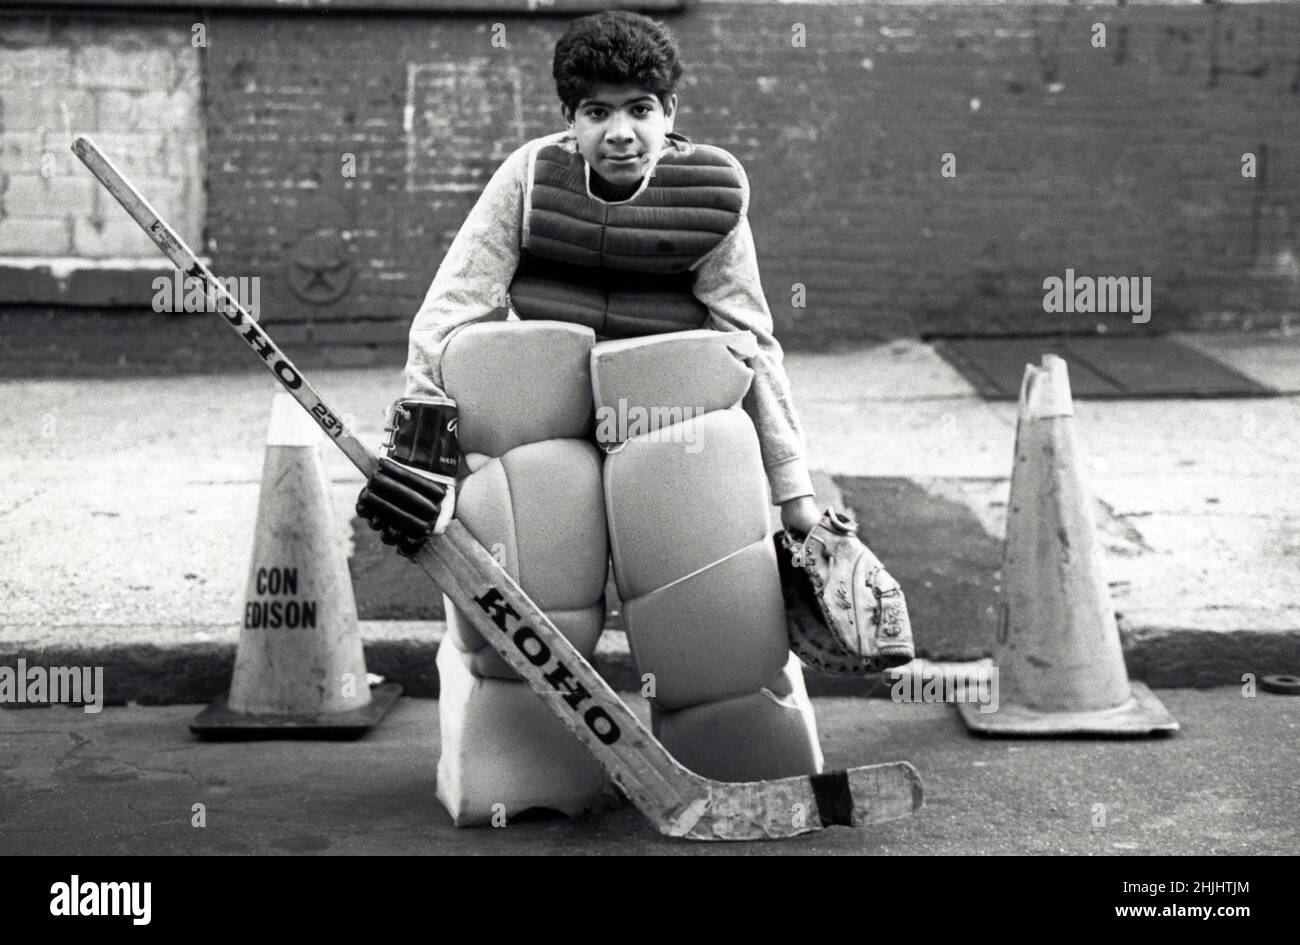 Un adolescent jouant du gardien de but sur son équipe de hockey de rue.Il porte des équipements à petit budget faits maison. Banque D'Images